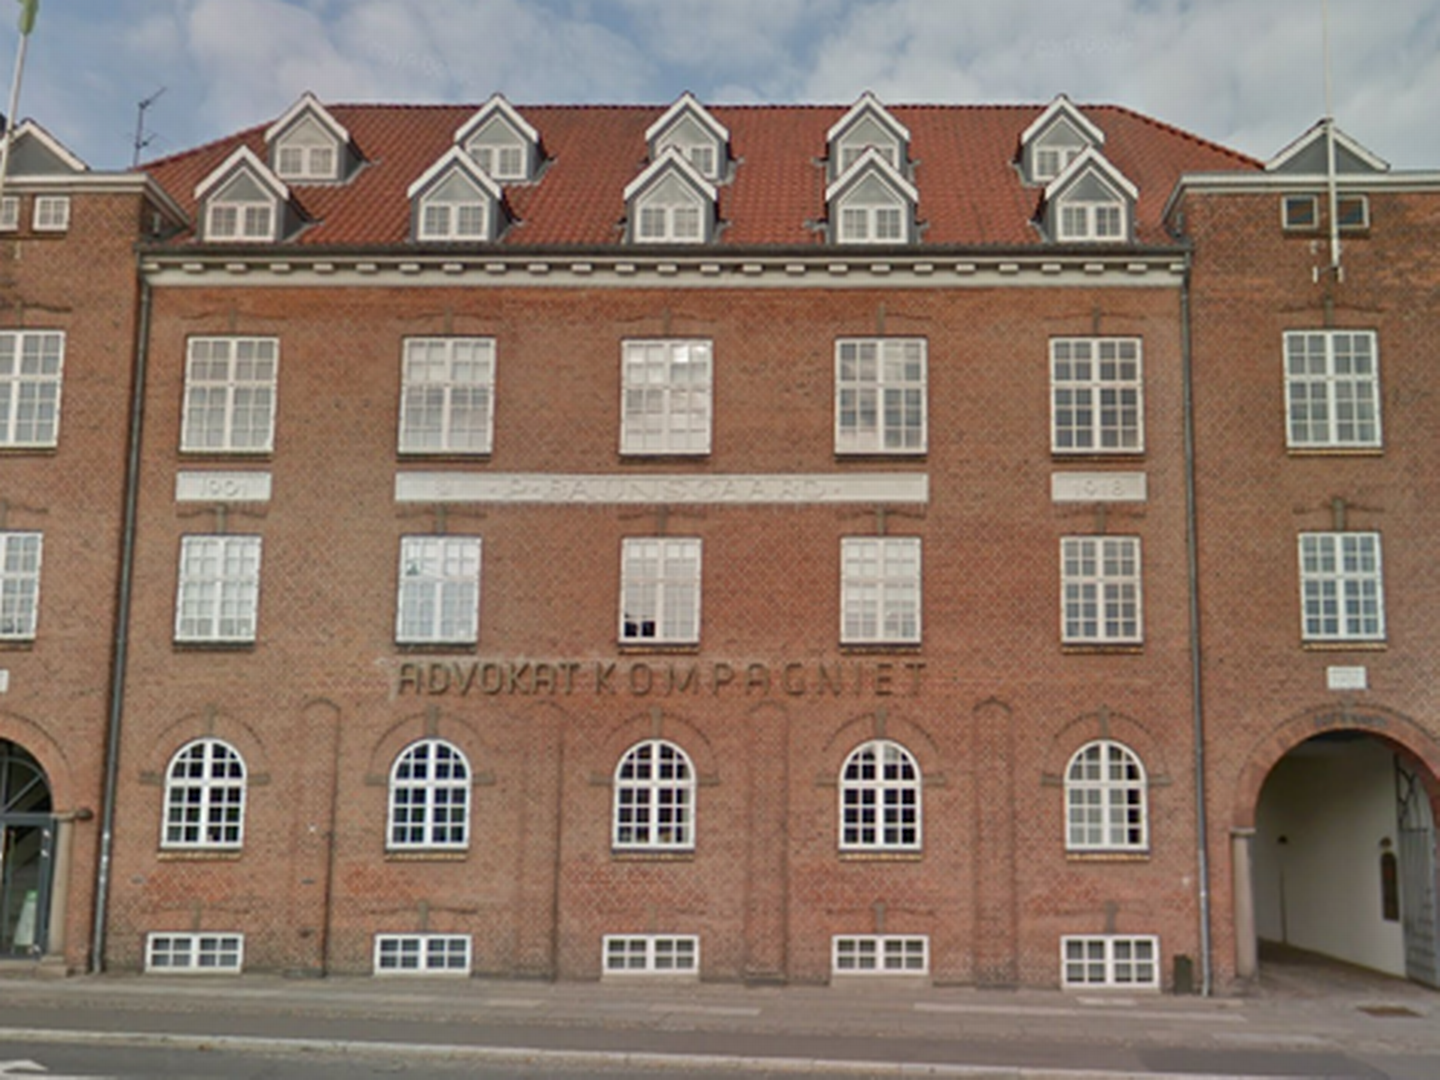 Advokatkompagniet holder blandt andet til på adressen Nørreport 26 i Aarhus. | Foto: Google Maps